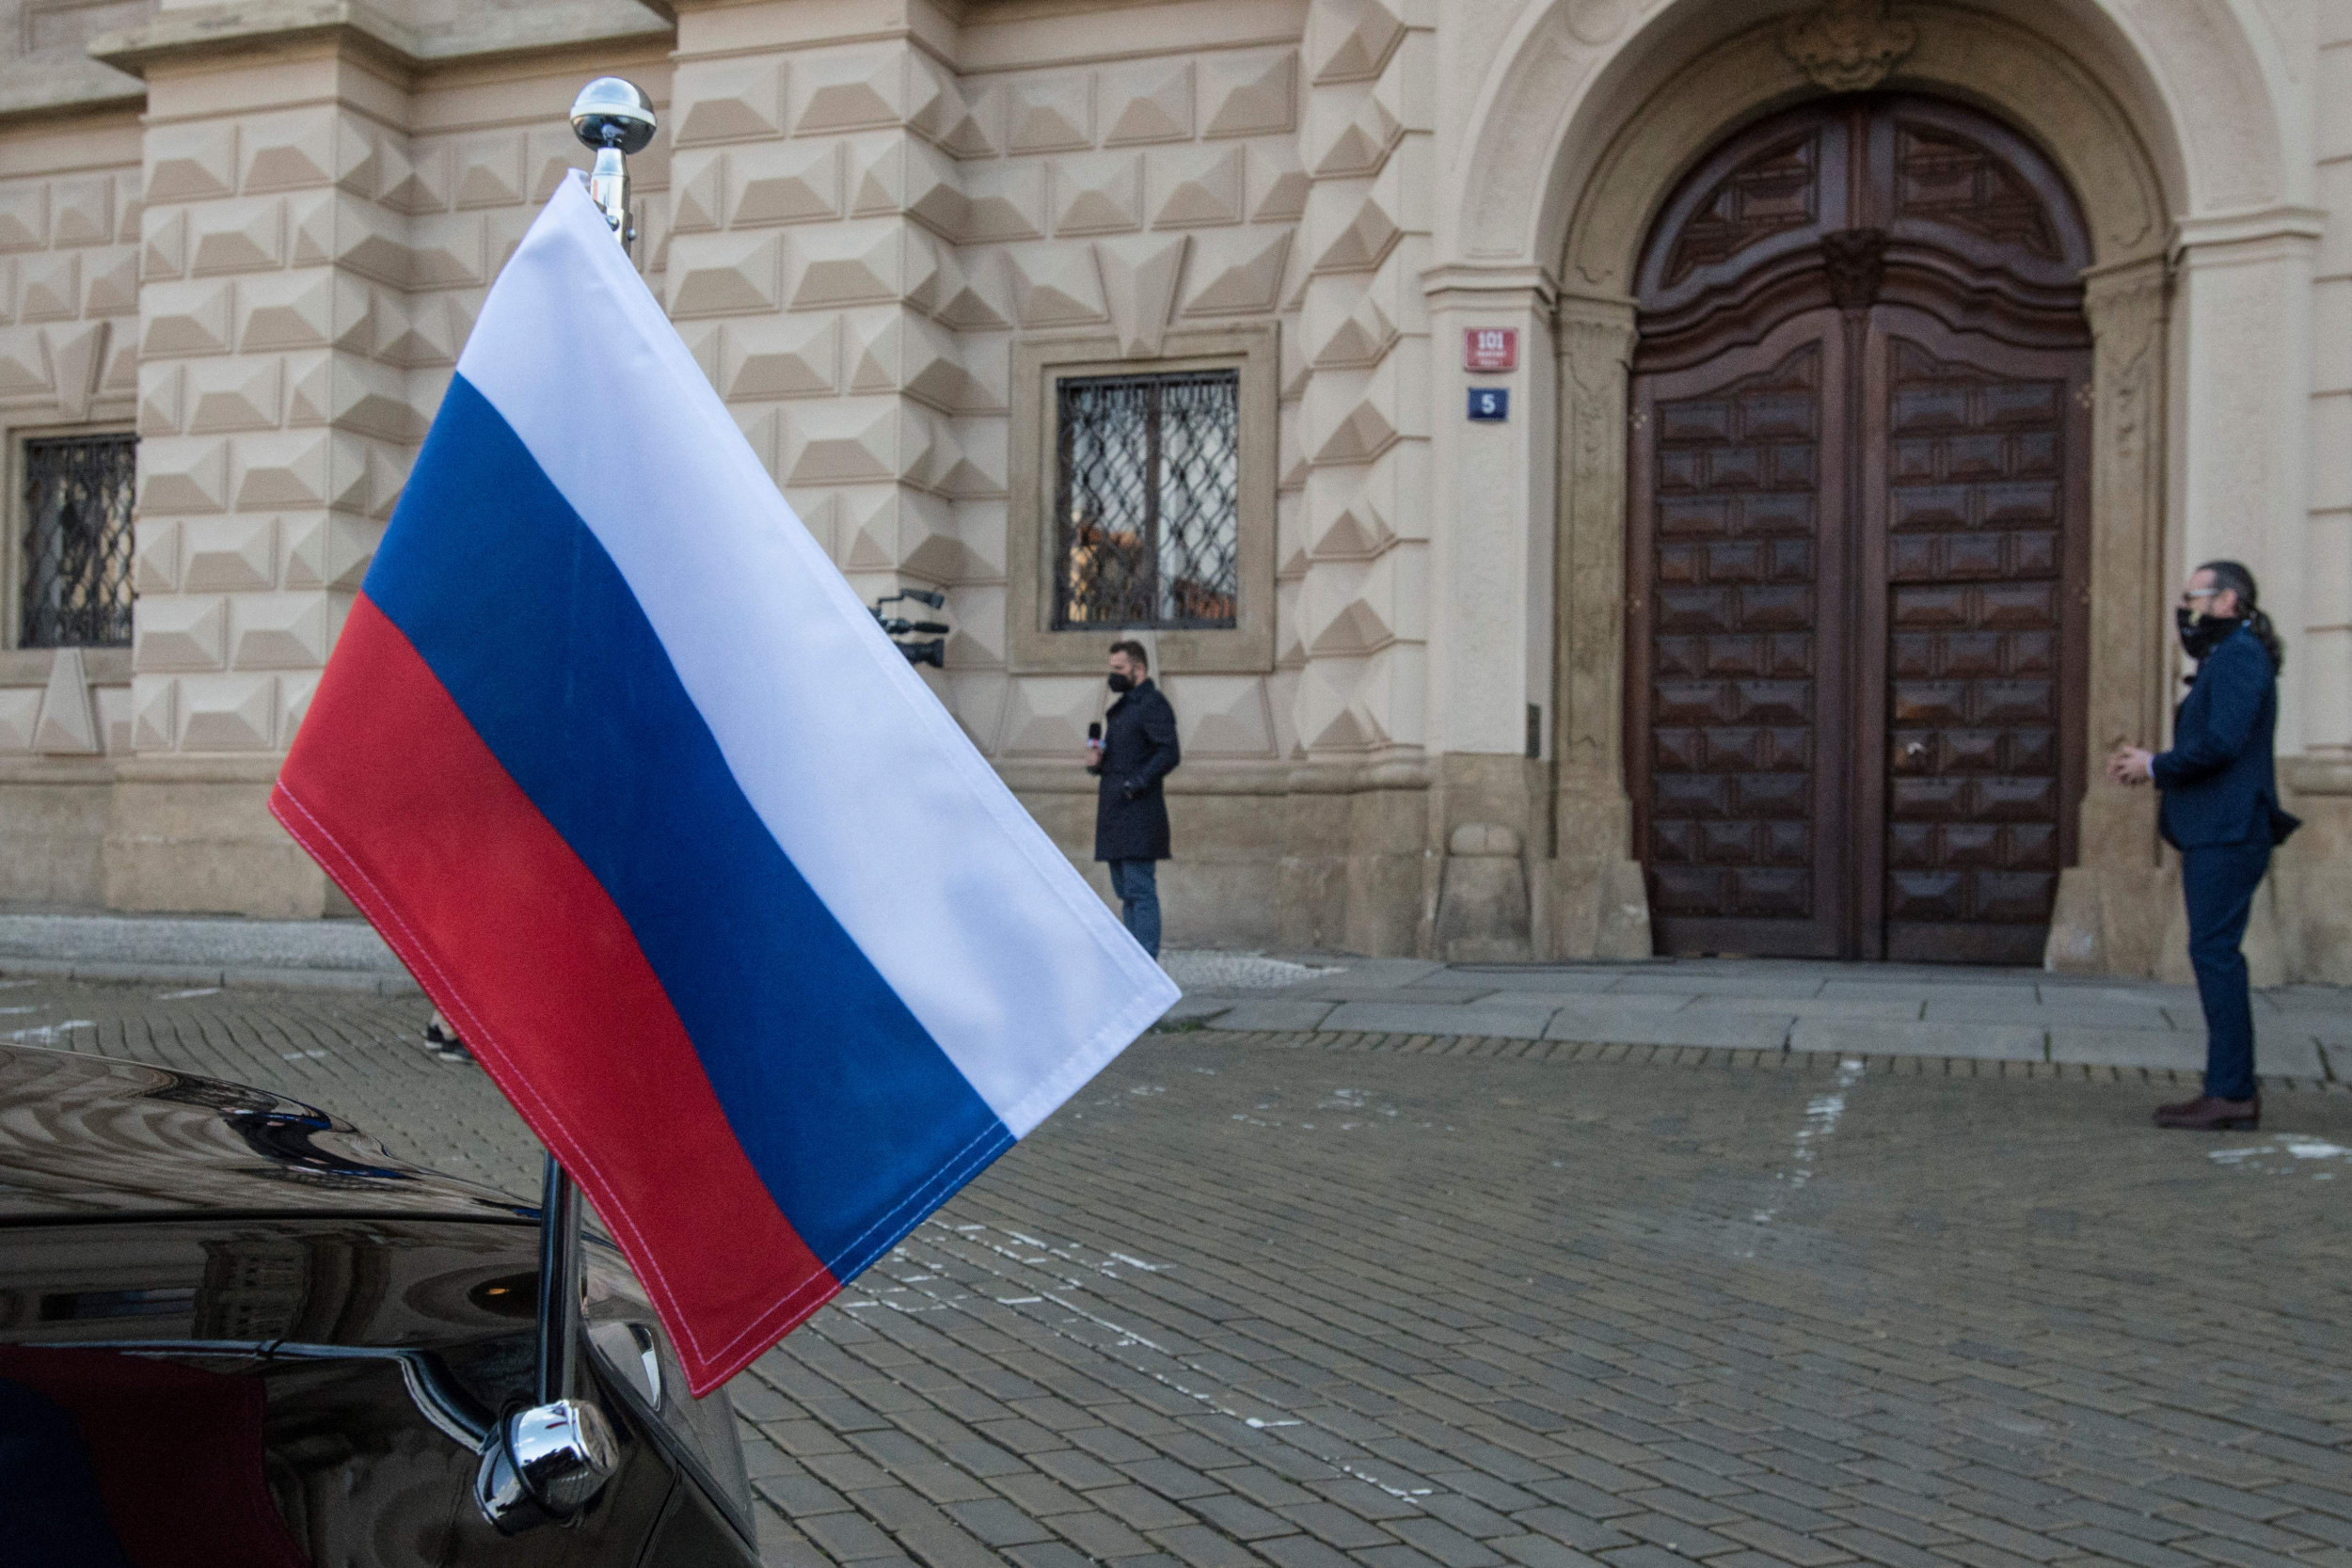 Photo of Rusko žiada pobaltské krajiny, aby „Slovensko bolo nepriateľské voči verejnosti“ uprostred odvetných opatrení a vyhostenia veľvyslancov